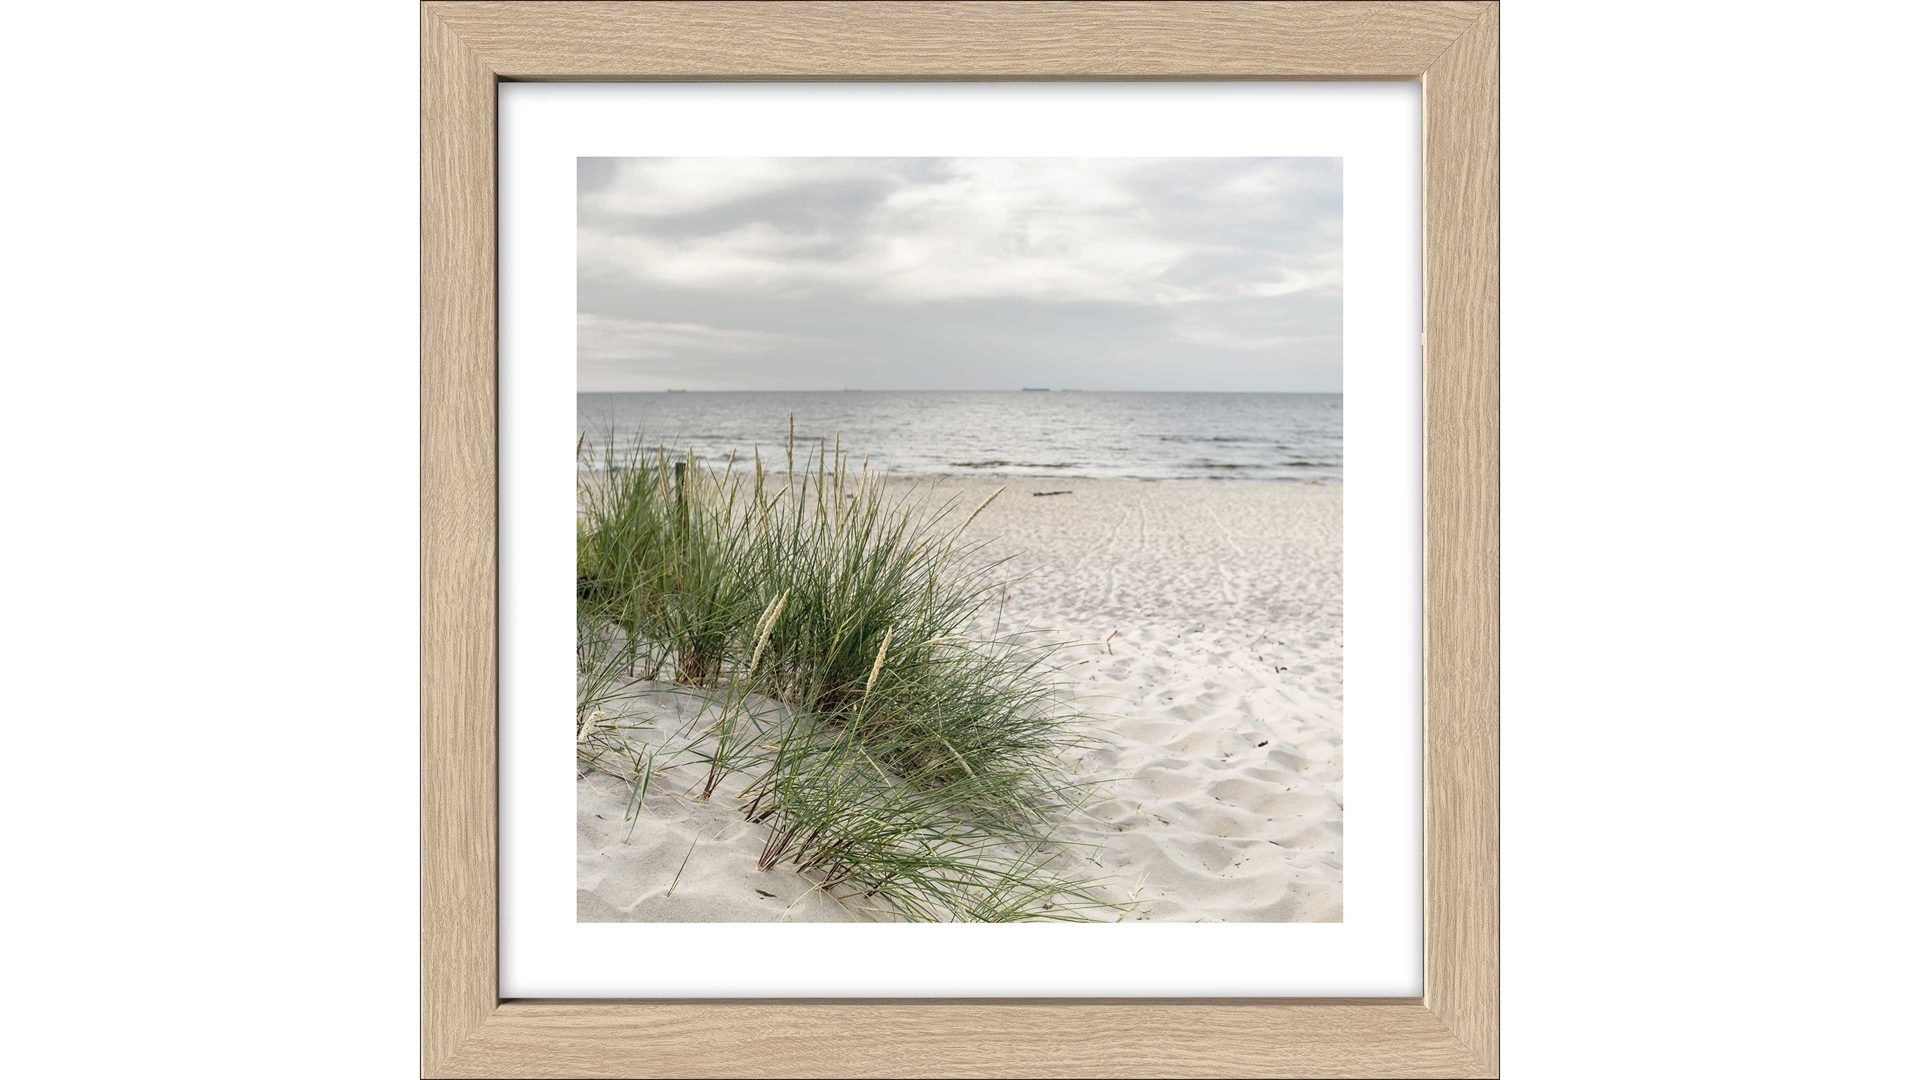 Kunstdruck Pro®art bilderpalette aus Karton / Papier / Pappe in Beige PRO®ART Kunstdruck Nordic Beach Atmosphere IV Eiche, Strandmotiv - ca. 35 x 35 cm